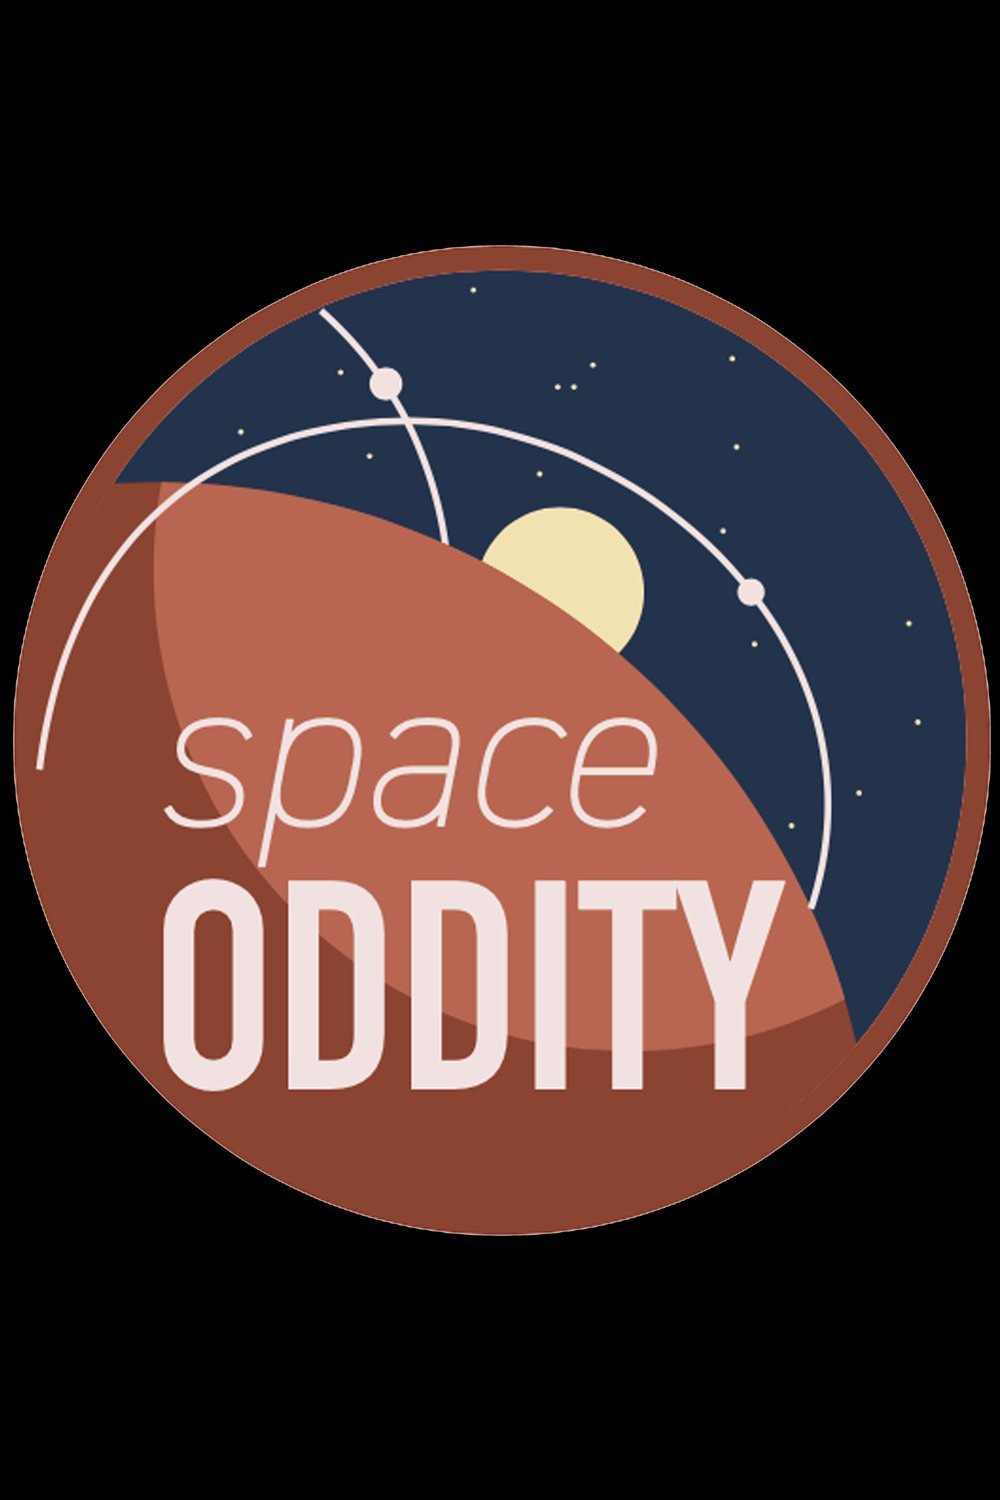 Space Oddity (2022) by Kyra Sedgwick